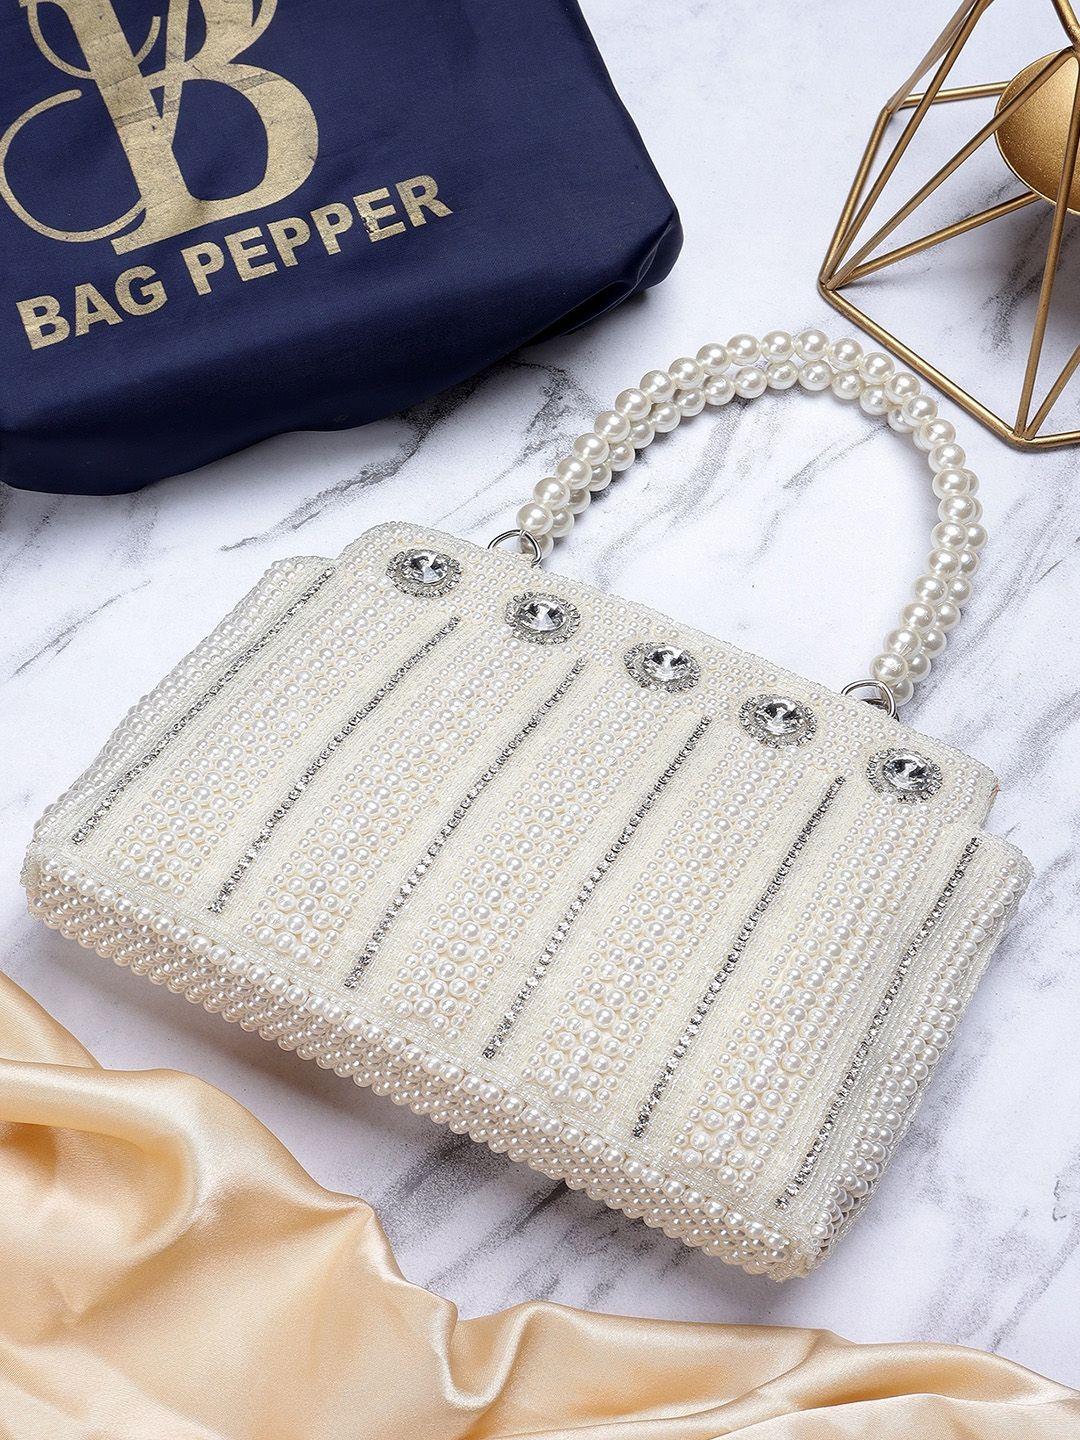 bag pepper pearls embellished structured handheld bag